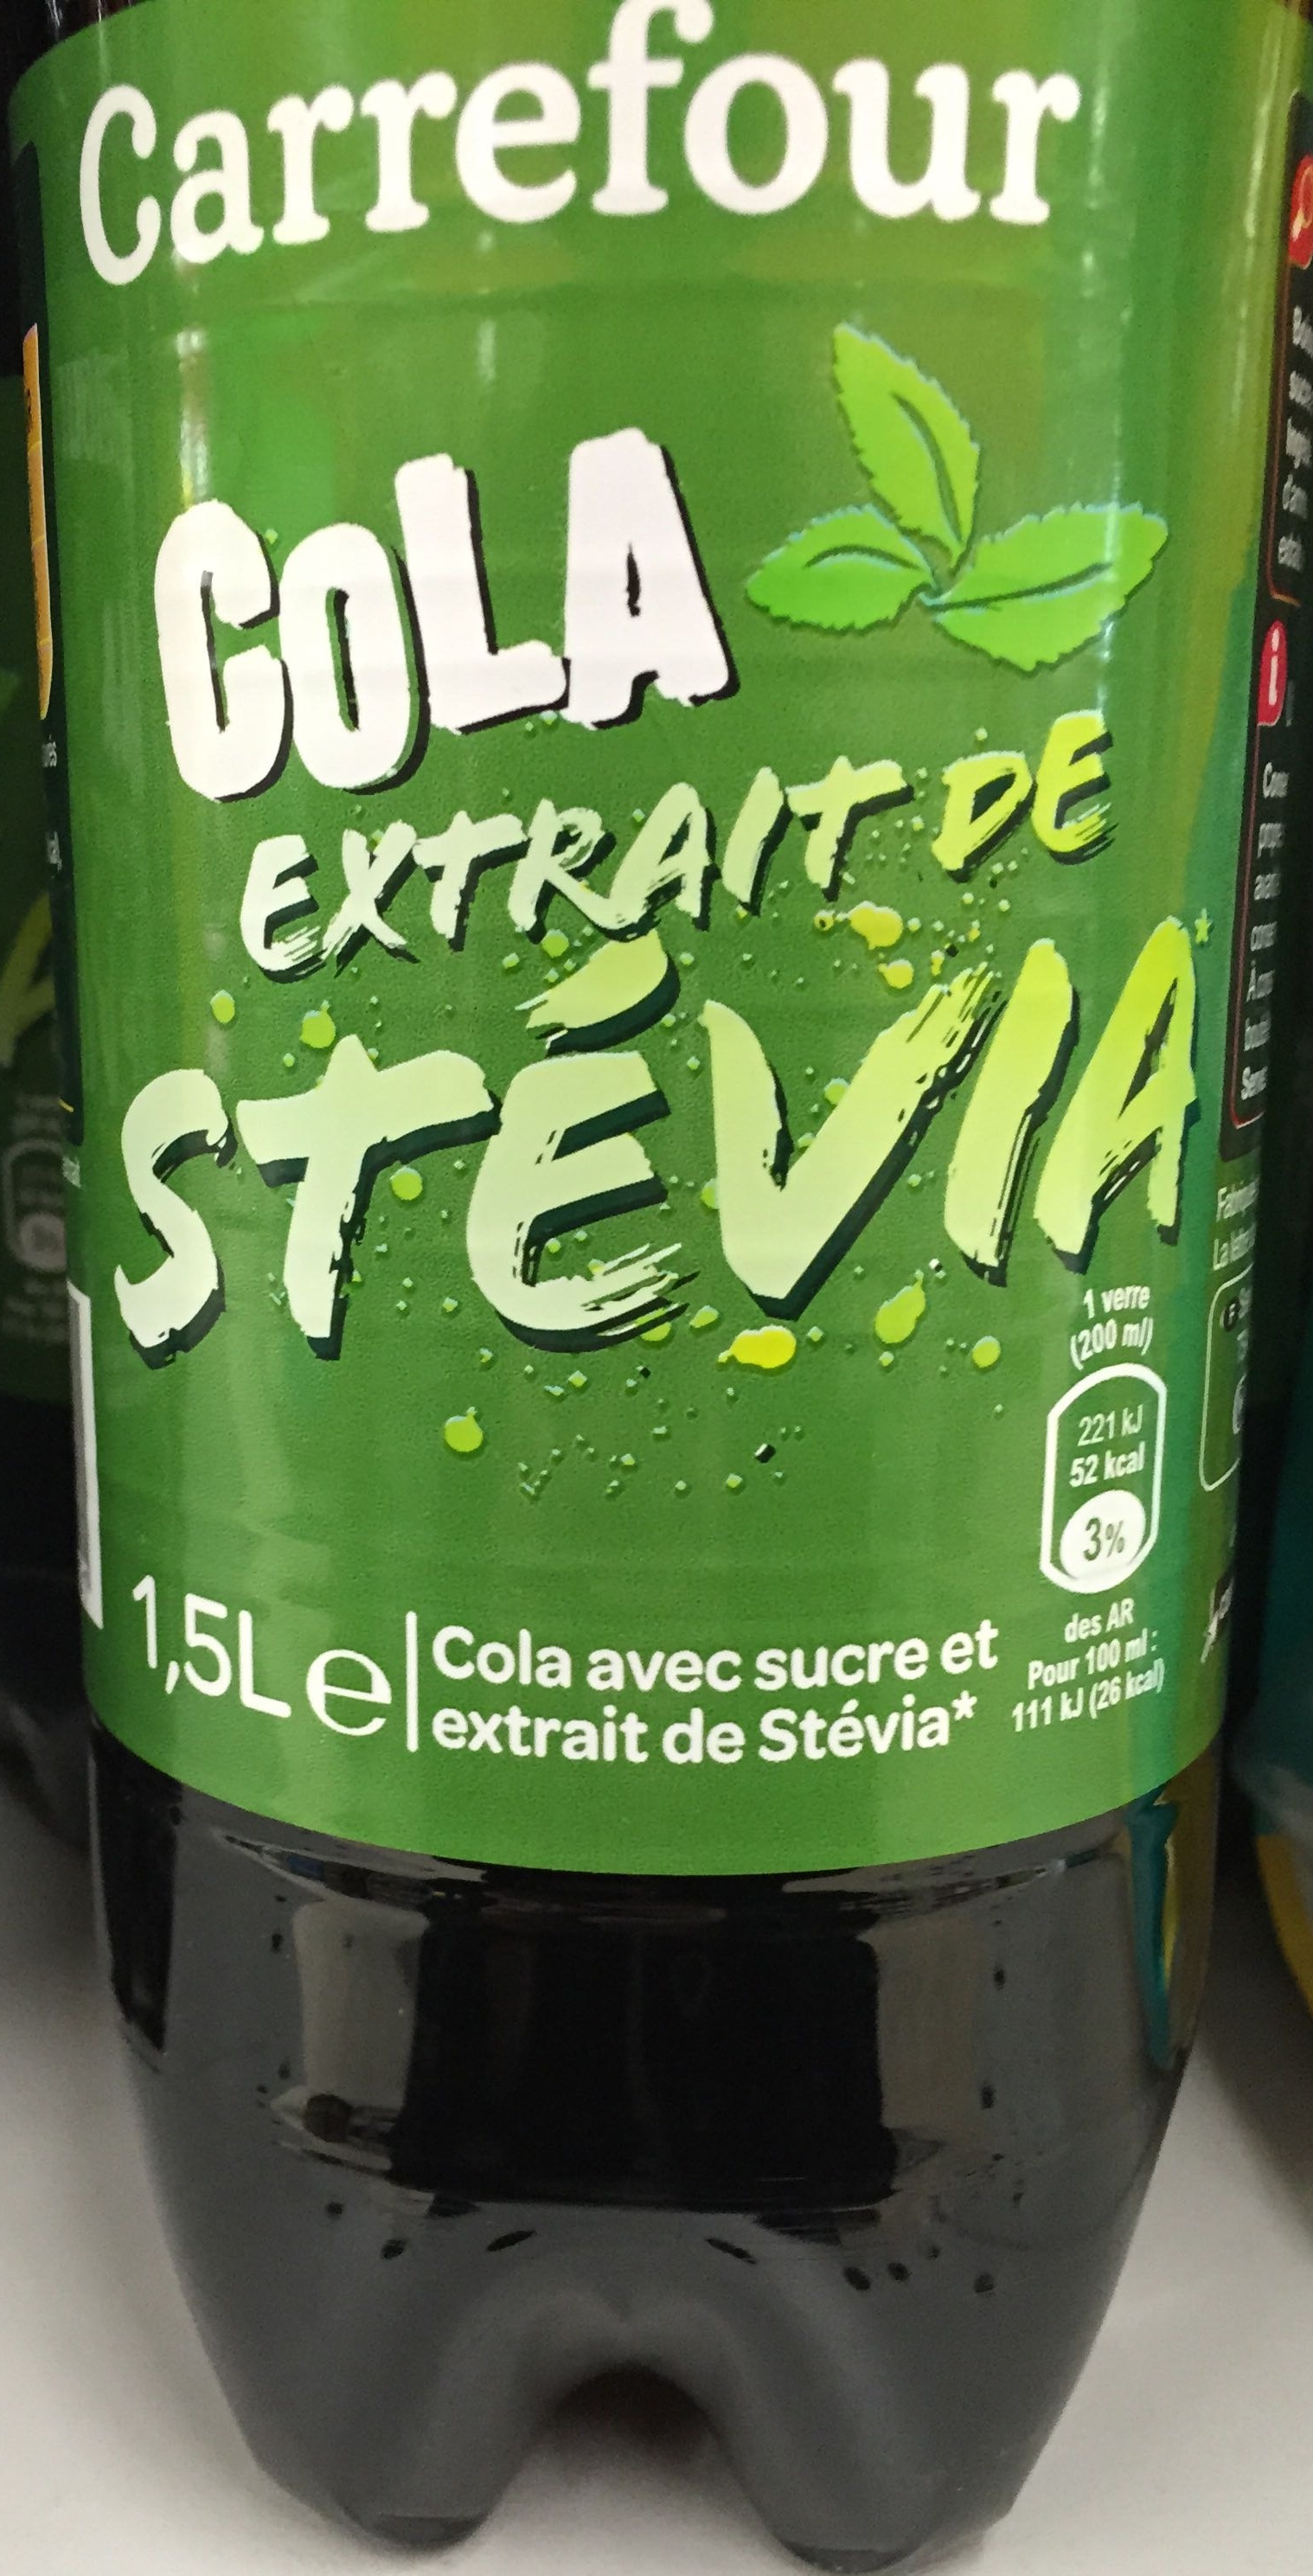 Cola extrait de Stévia - Produkt - fr